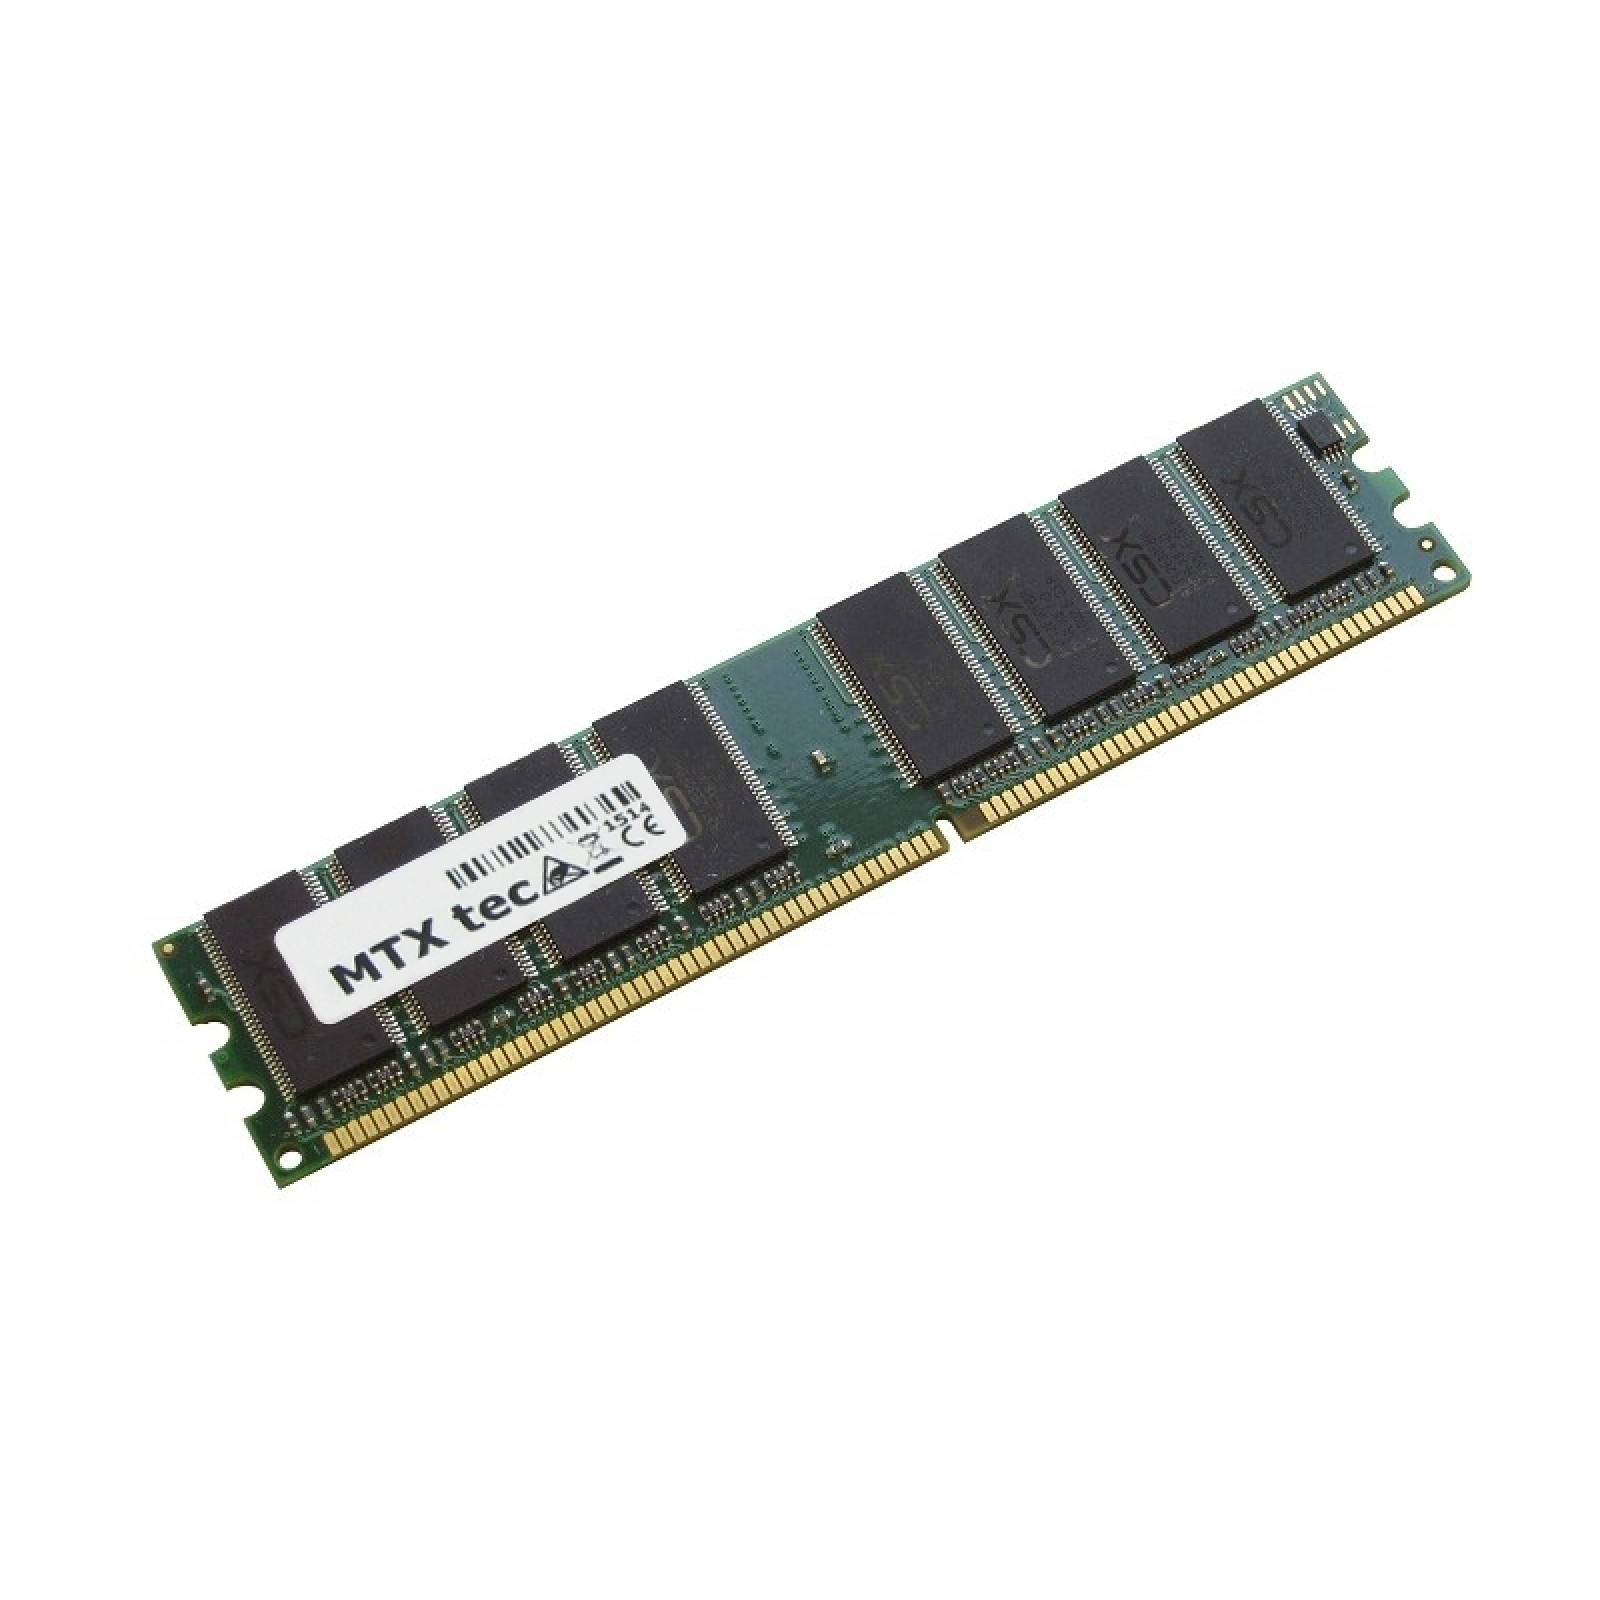 GB Arbeitsspeicher 1 für Amilo MTXTEC GB D7850 D-7850 RAM DDR 1 Notebook-Speicher FUJITSU (UN755),